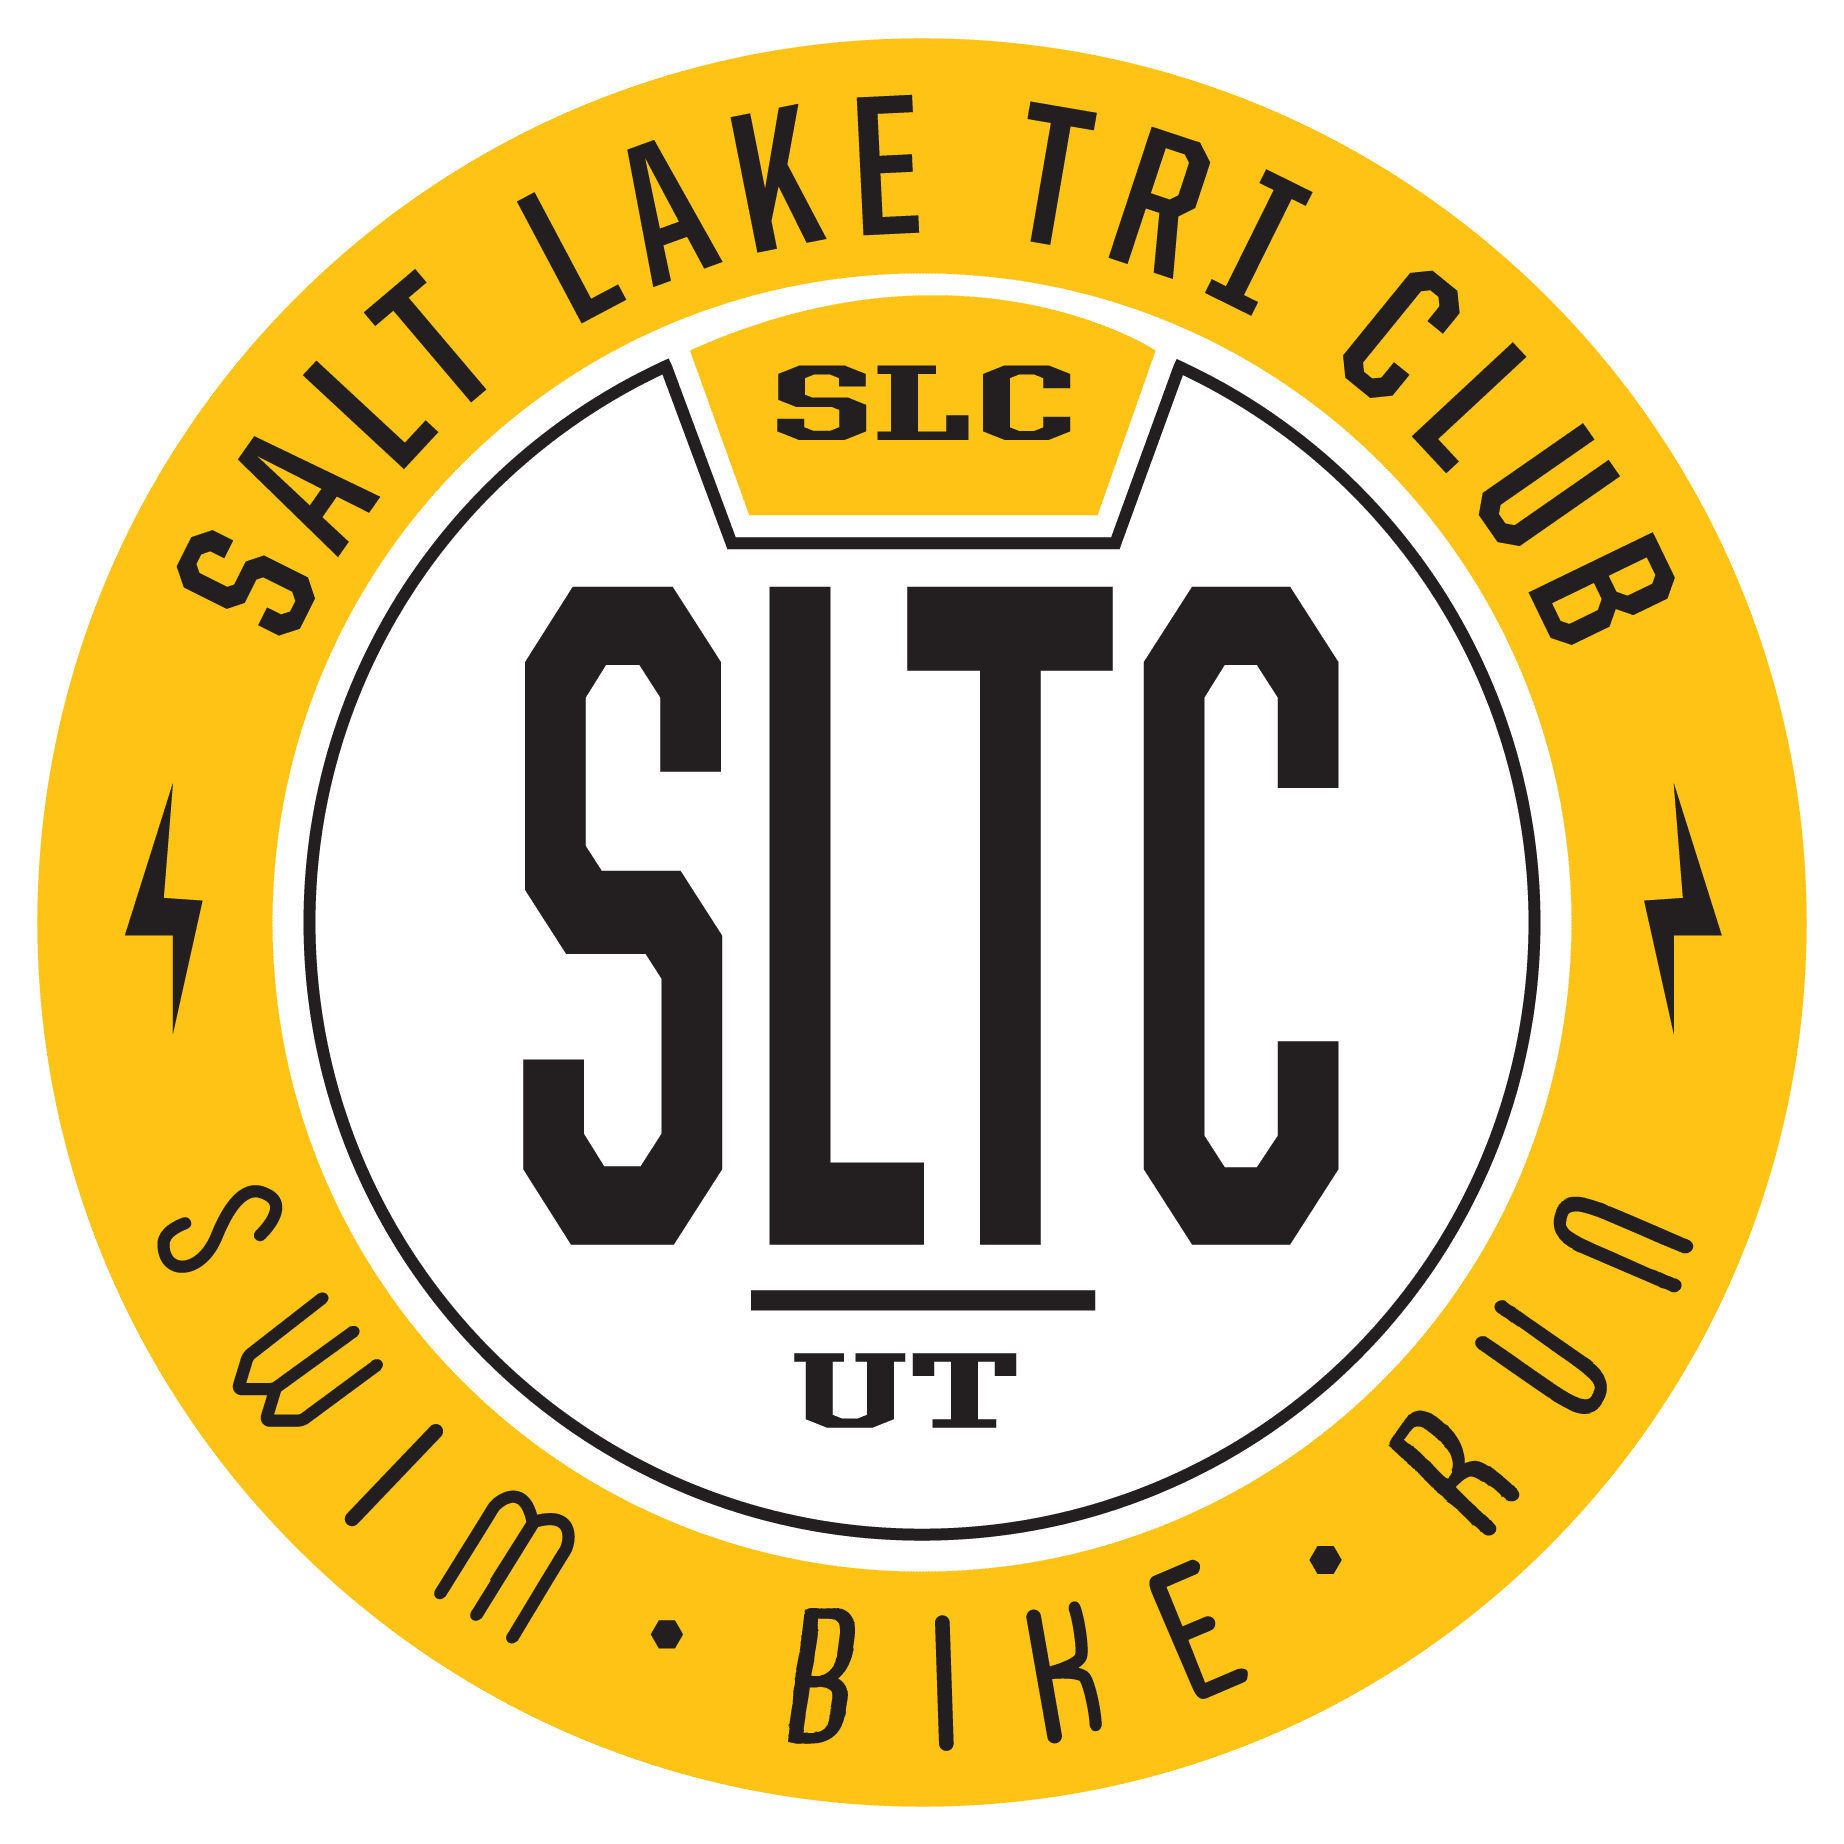 Download Annual Membership Dues - Salt Lake Tri Club